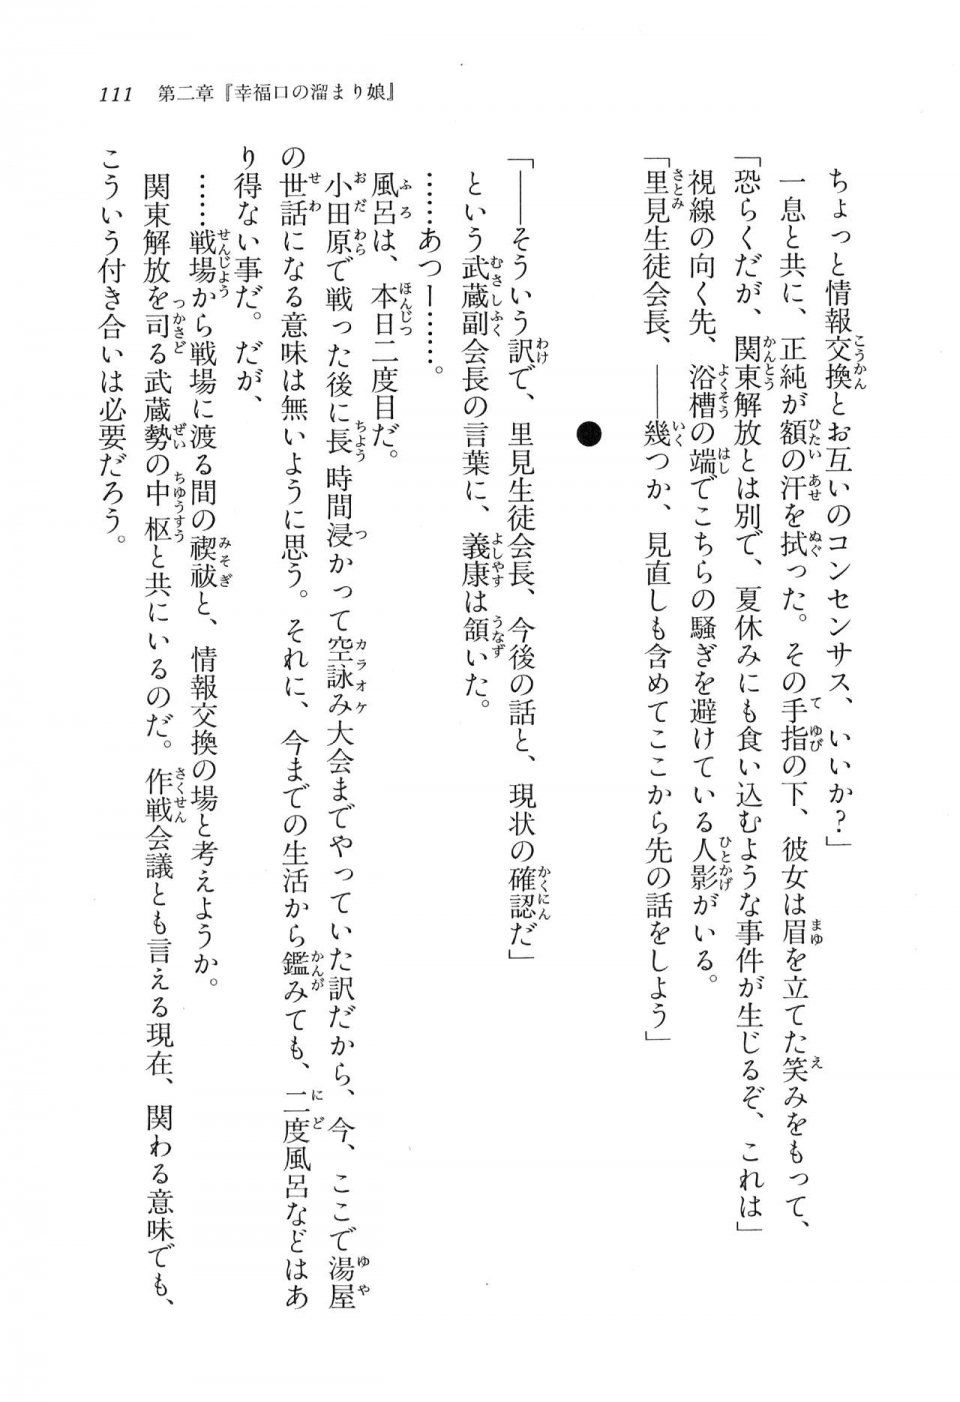 Kyoukai Senjou no Horizon LN Vol 16(7A) - Photo #111